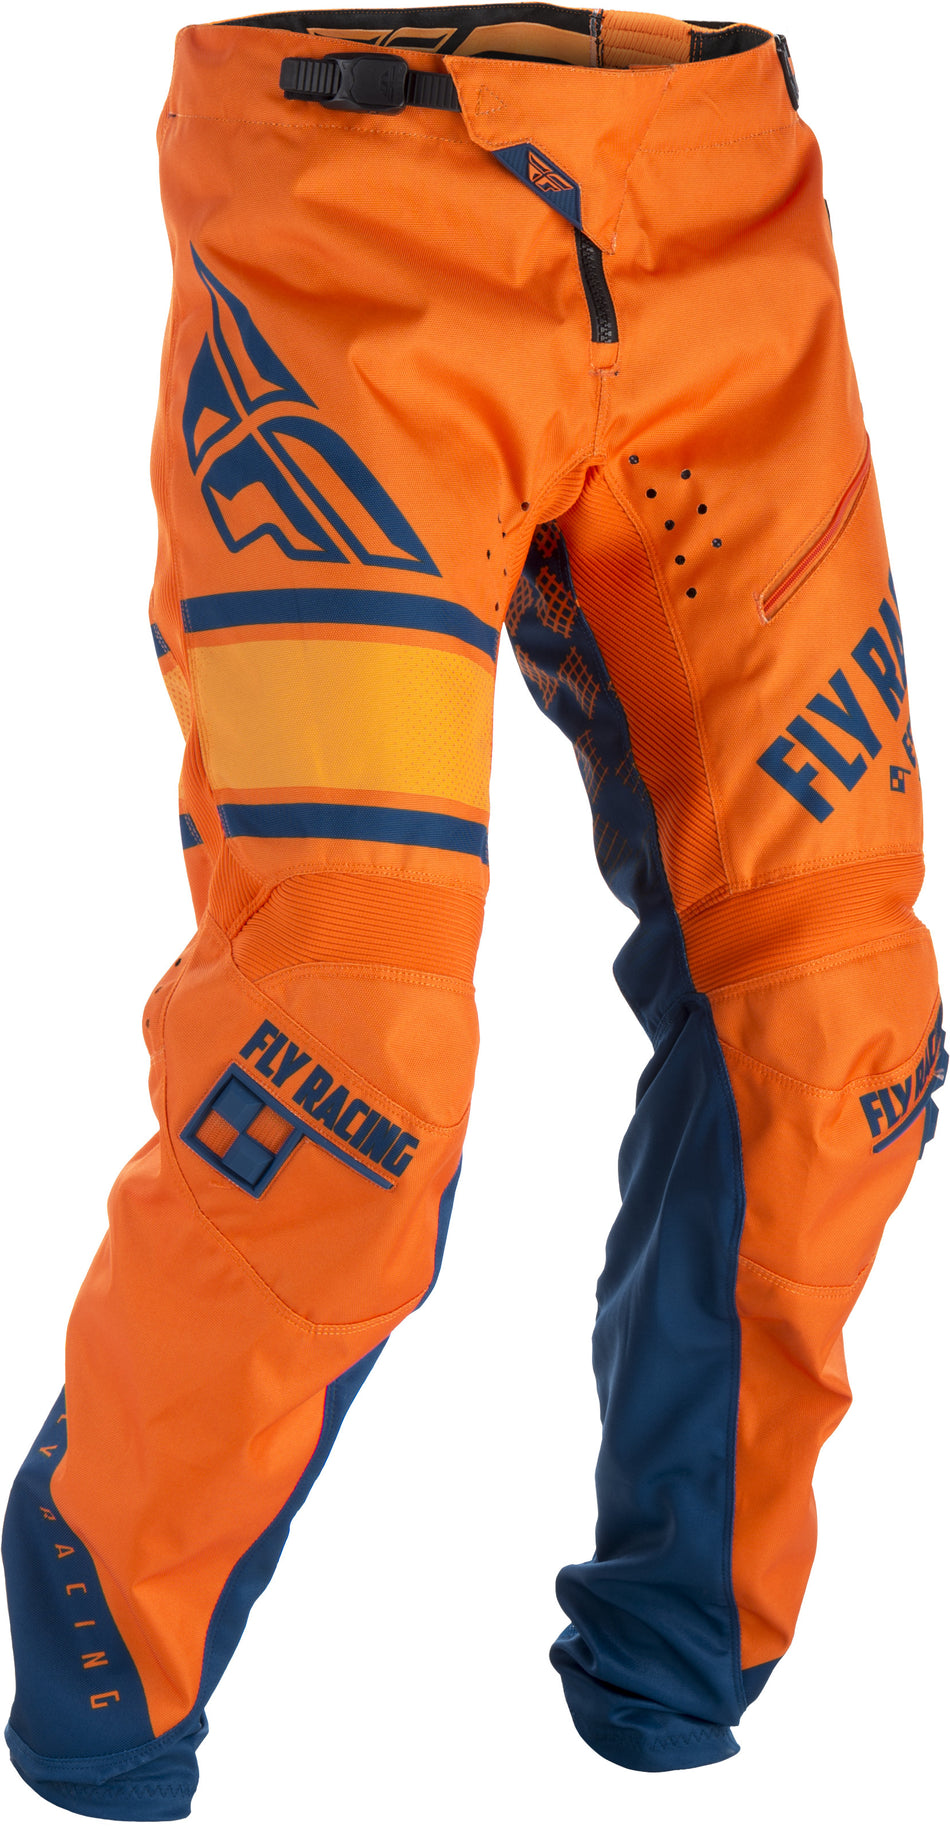 FLY RACING Kinetic Era Bicycle Pants Orange/Navy Sz 30 371-02830